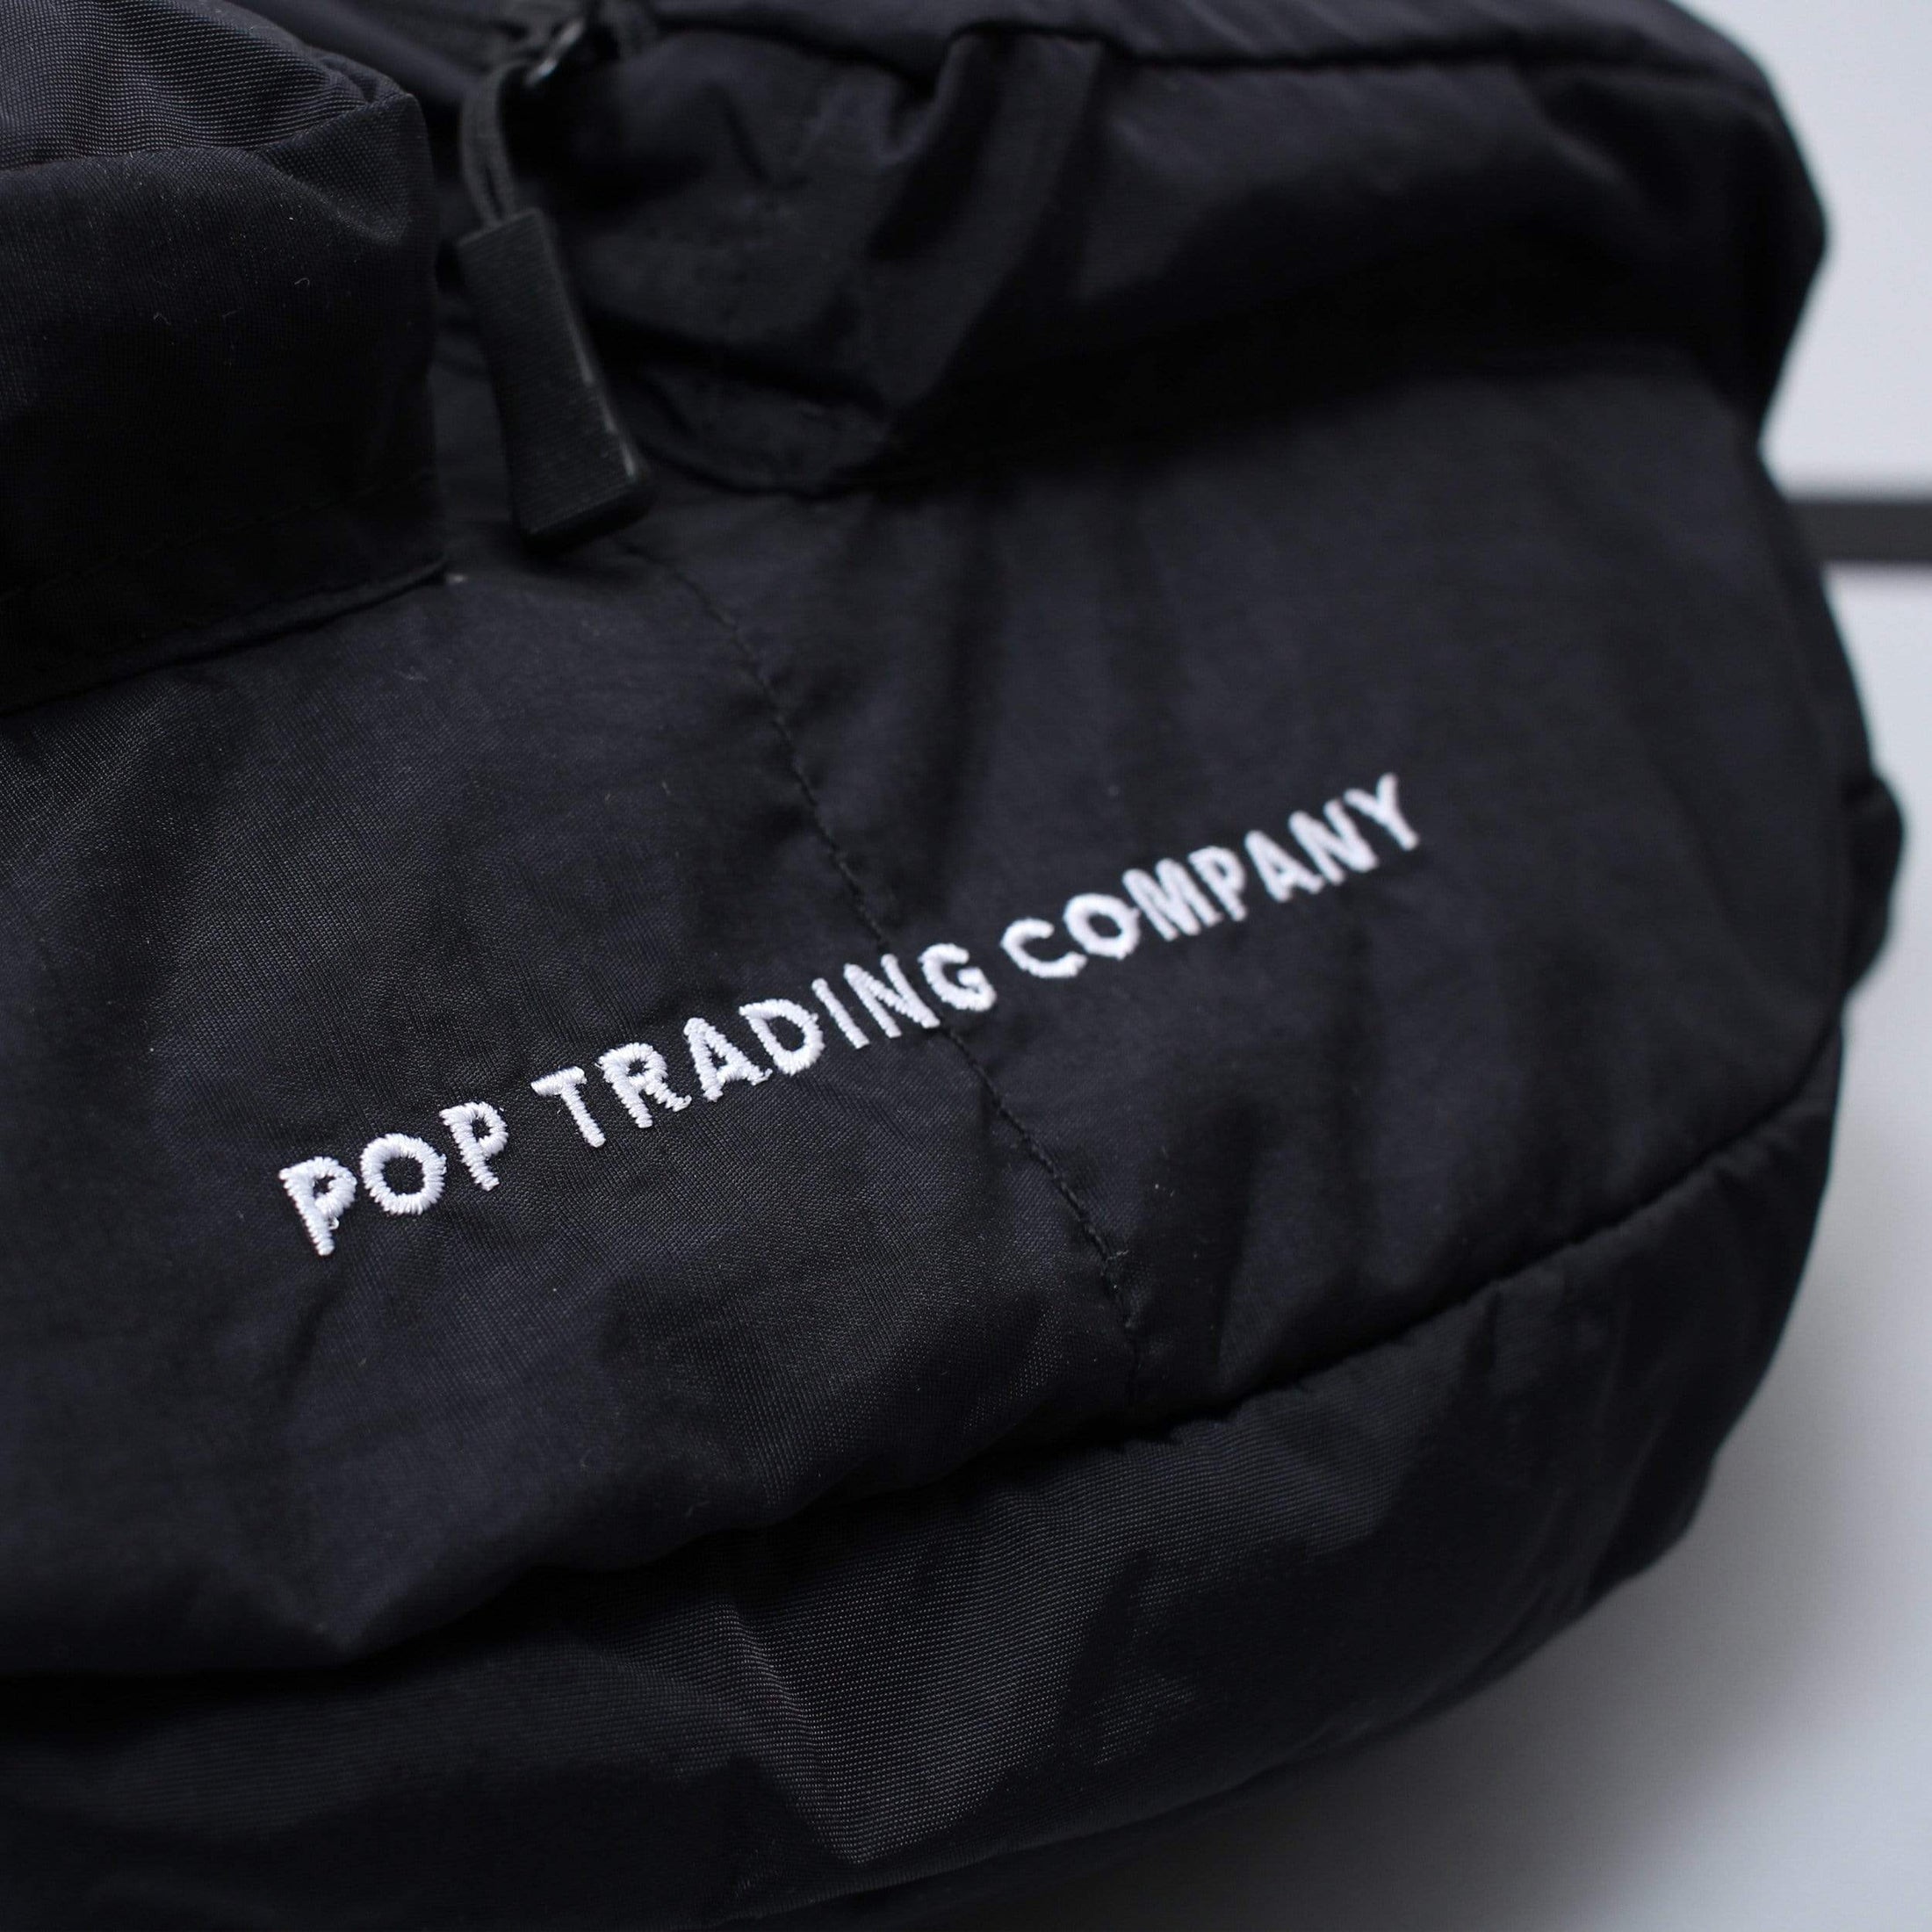 Pop Trading Body Bag Black / White